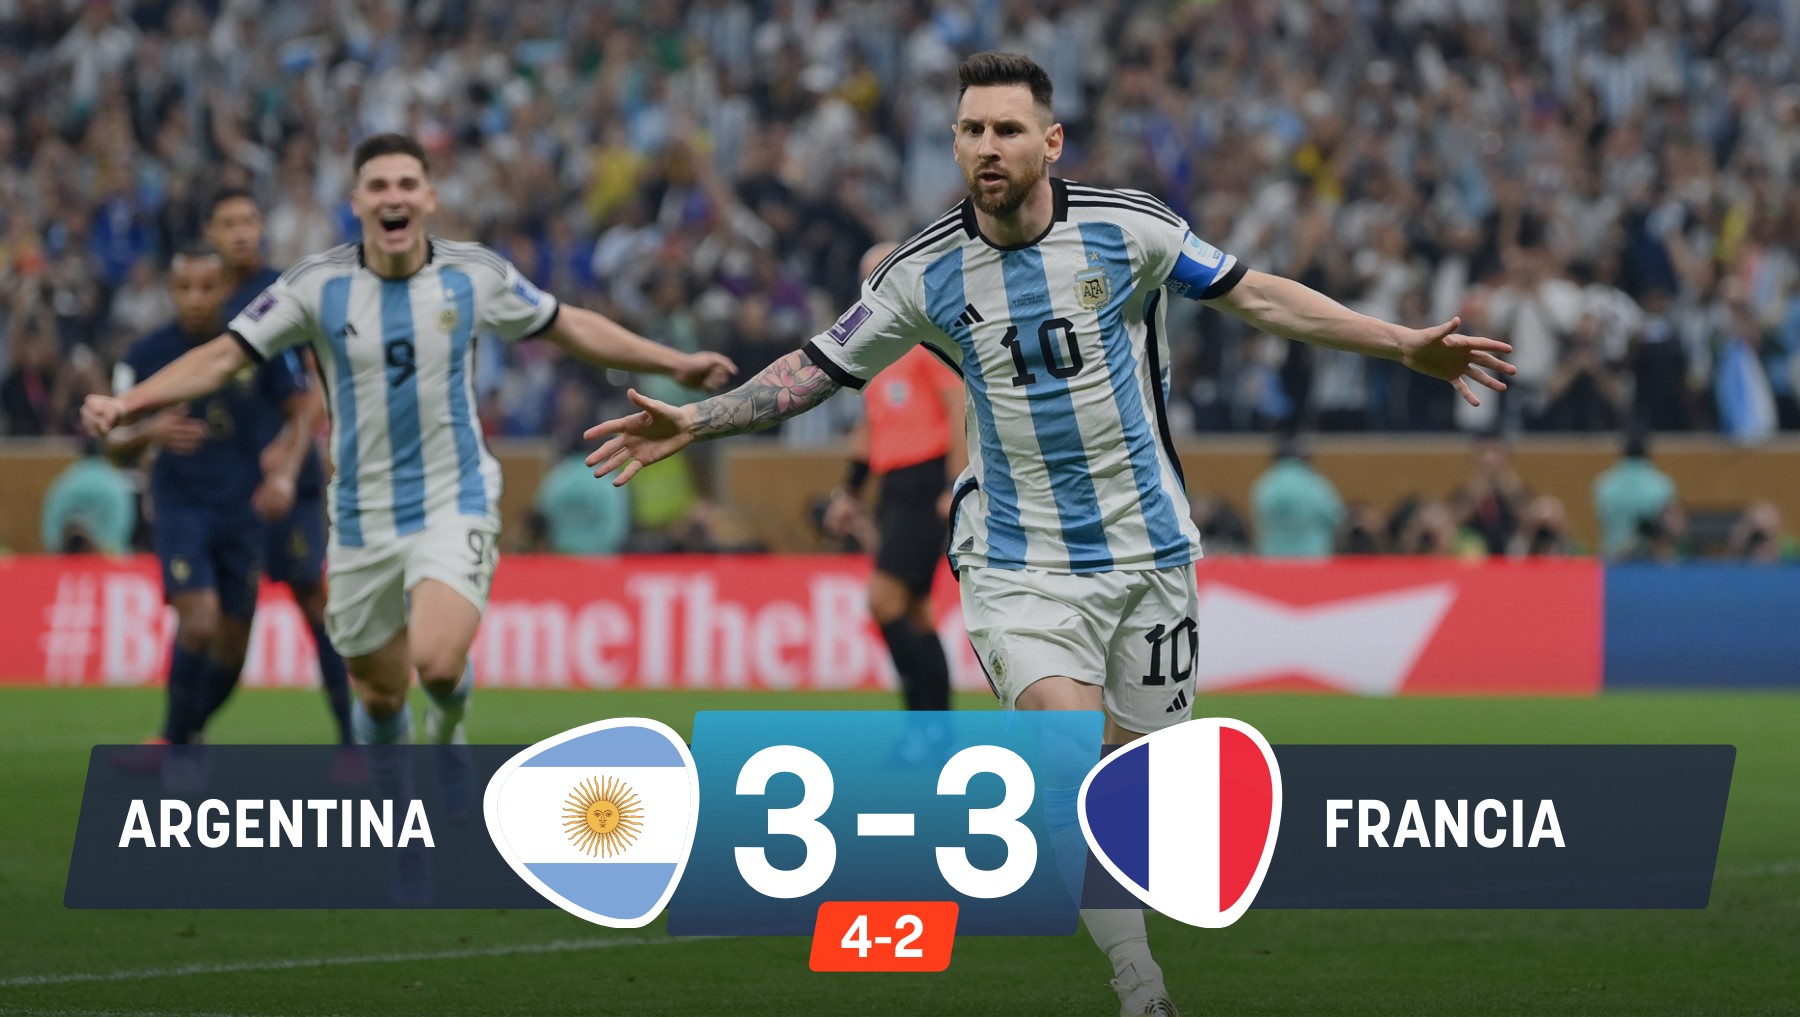 La Argentina de Messi ganó el Mundial al derrotar a Francia por penaltis en la final.